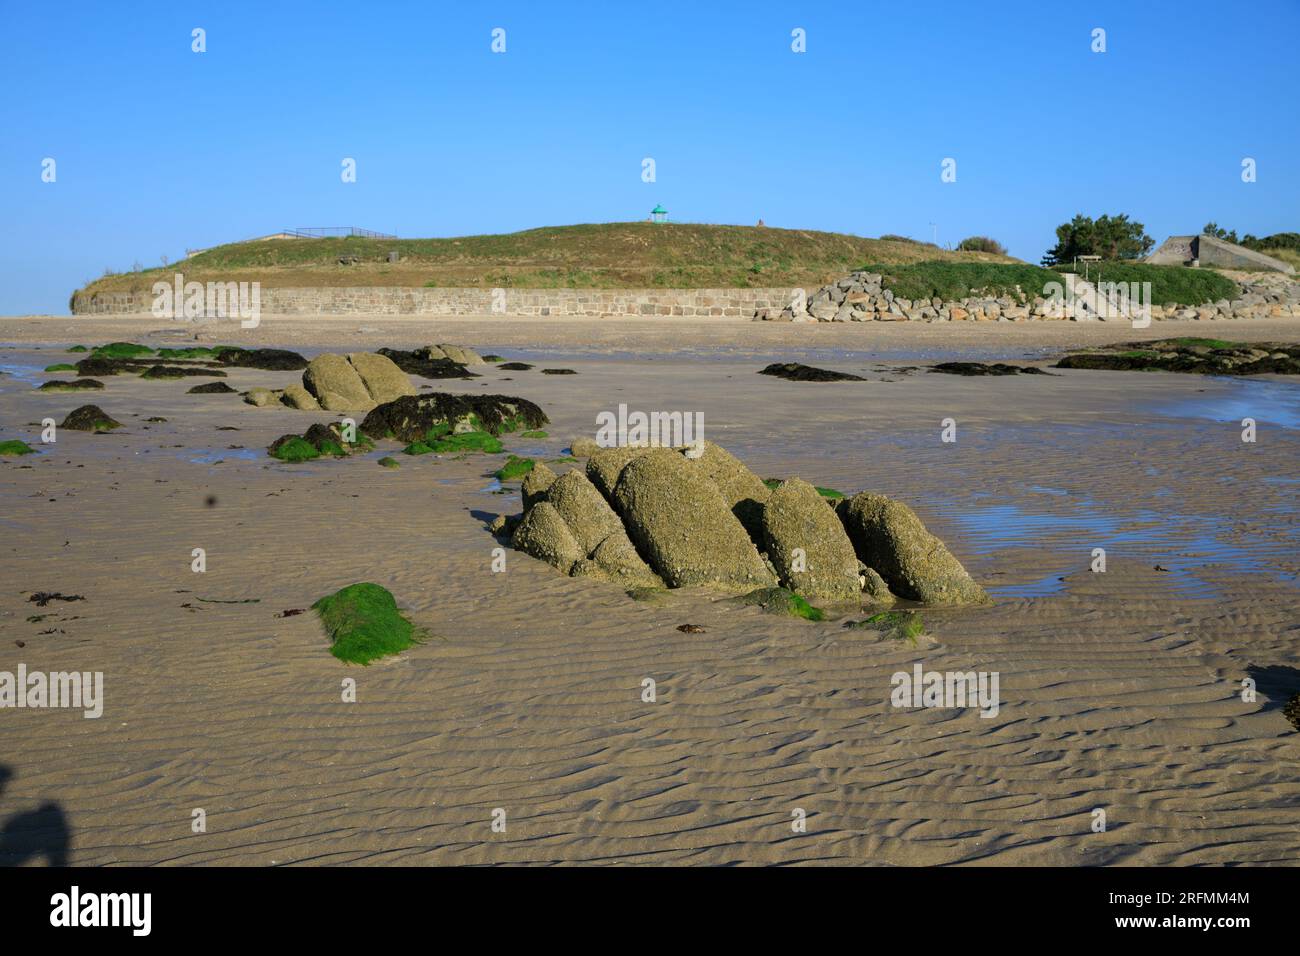 France, Normandy region, Manche department, Val de Saire, Réville, Pointe de Saire, plage de Jonville (beach), Stock Photo